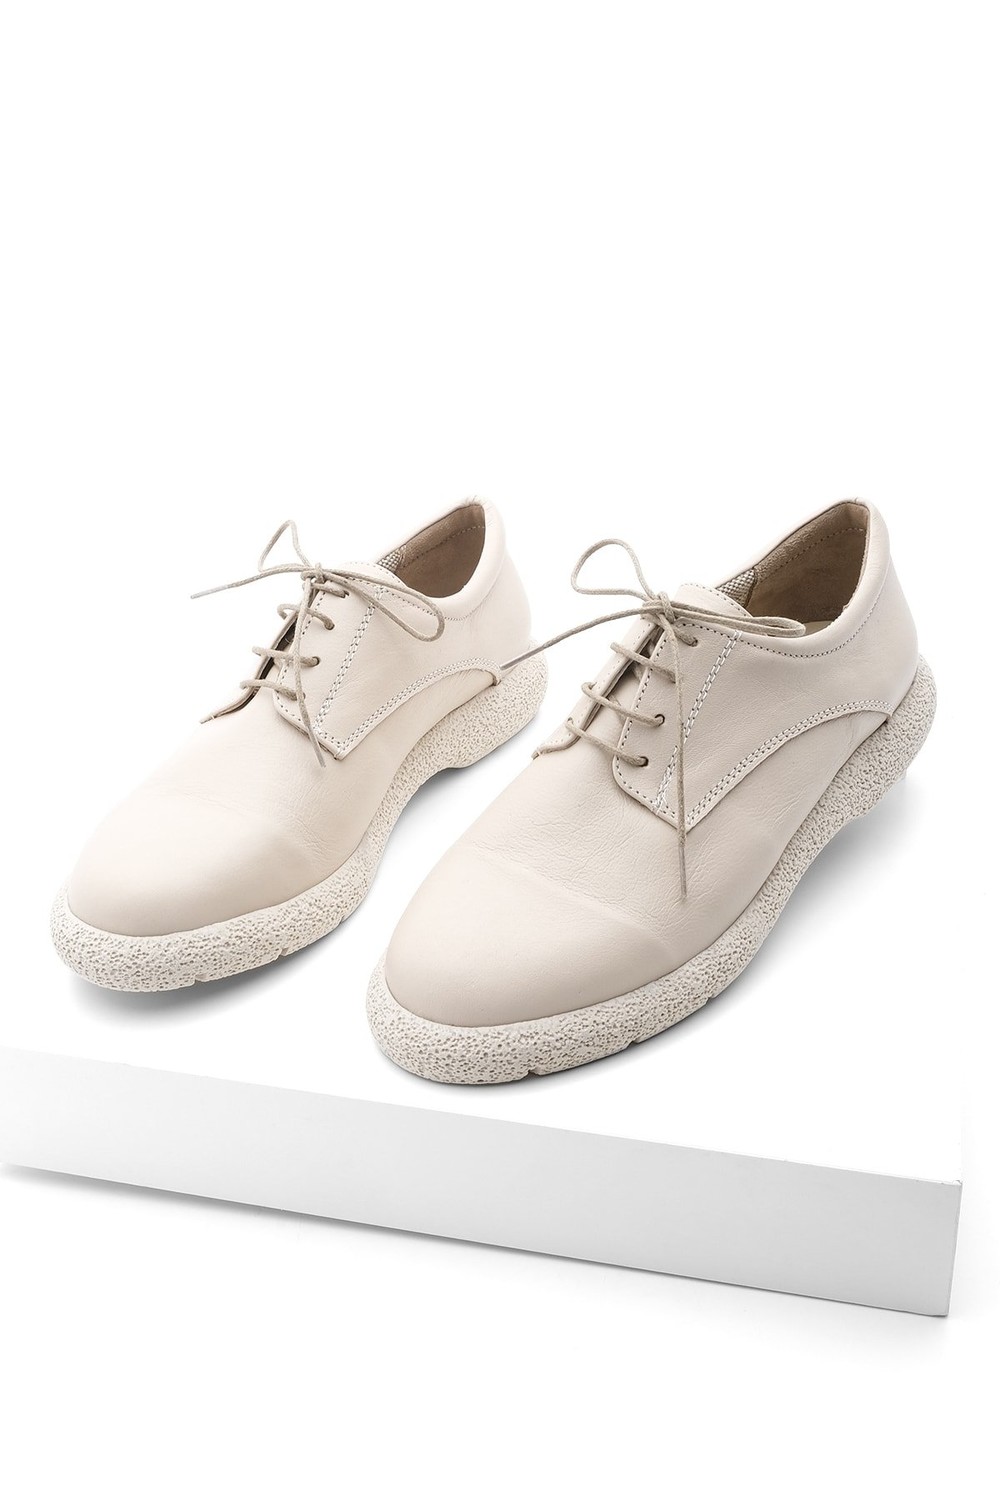 Marjin Oxford Shoes - Beige - Flat